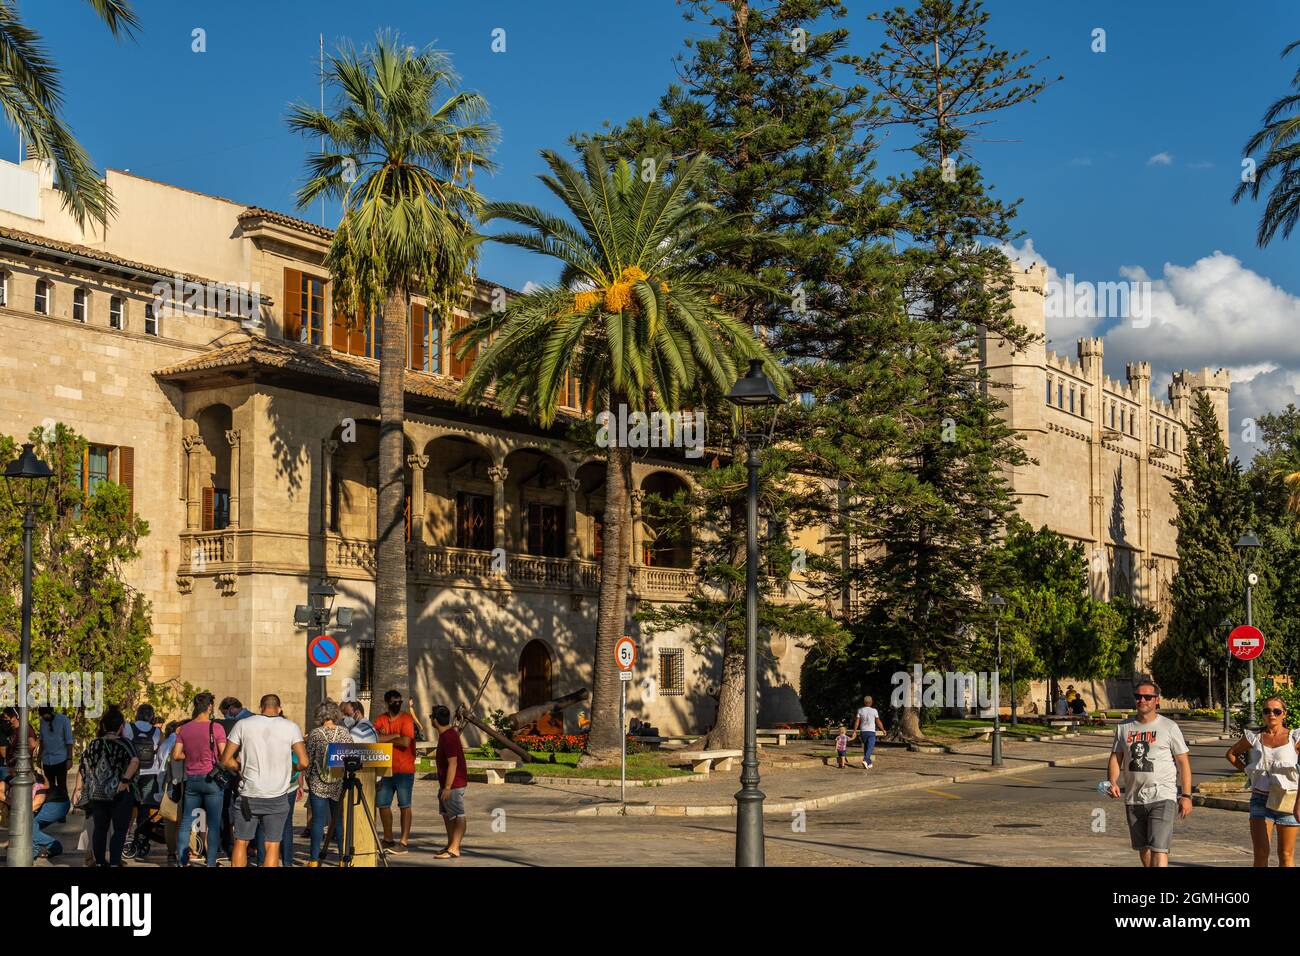 Palma de Mallorca, Spanien; september 10 2021: Gesamtansicht des öffentlichen Gebäudes El Consolat de Mar, Sitz der balearischen Regierung, neben dem Goth Stockfoto